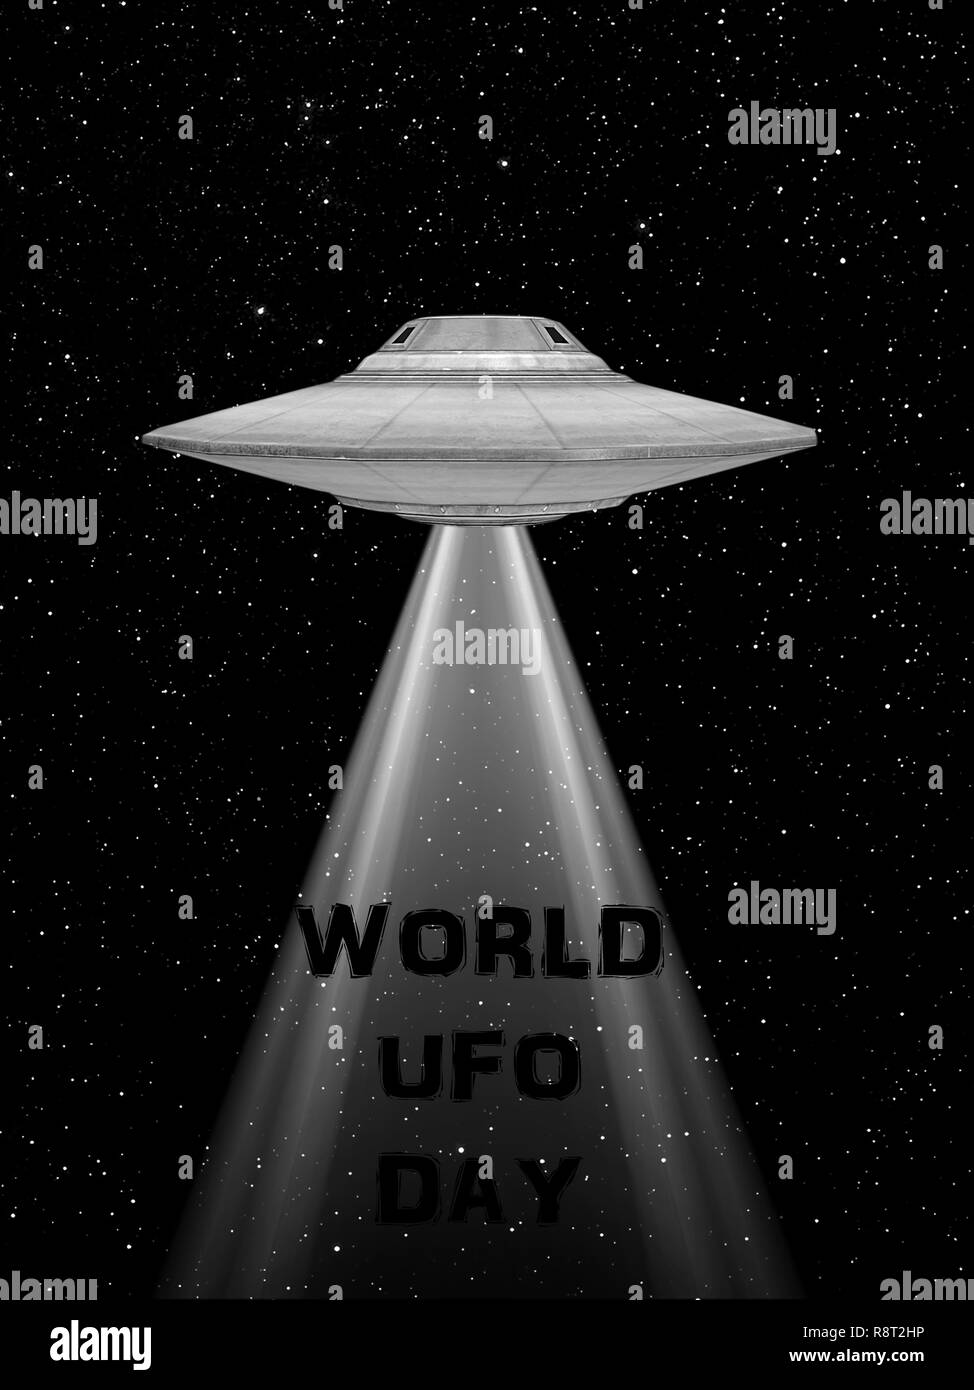 Der UFO Raumschiff fliegen. Welt UFO-Tag. Fliegende Untertasse. Stockfoto